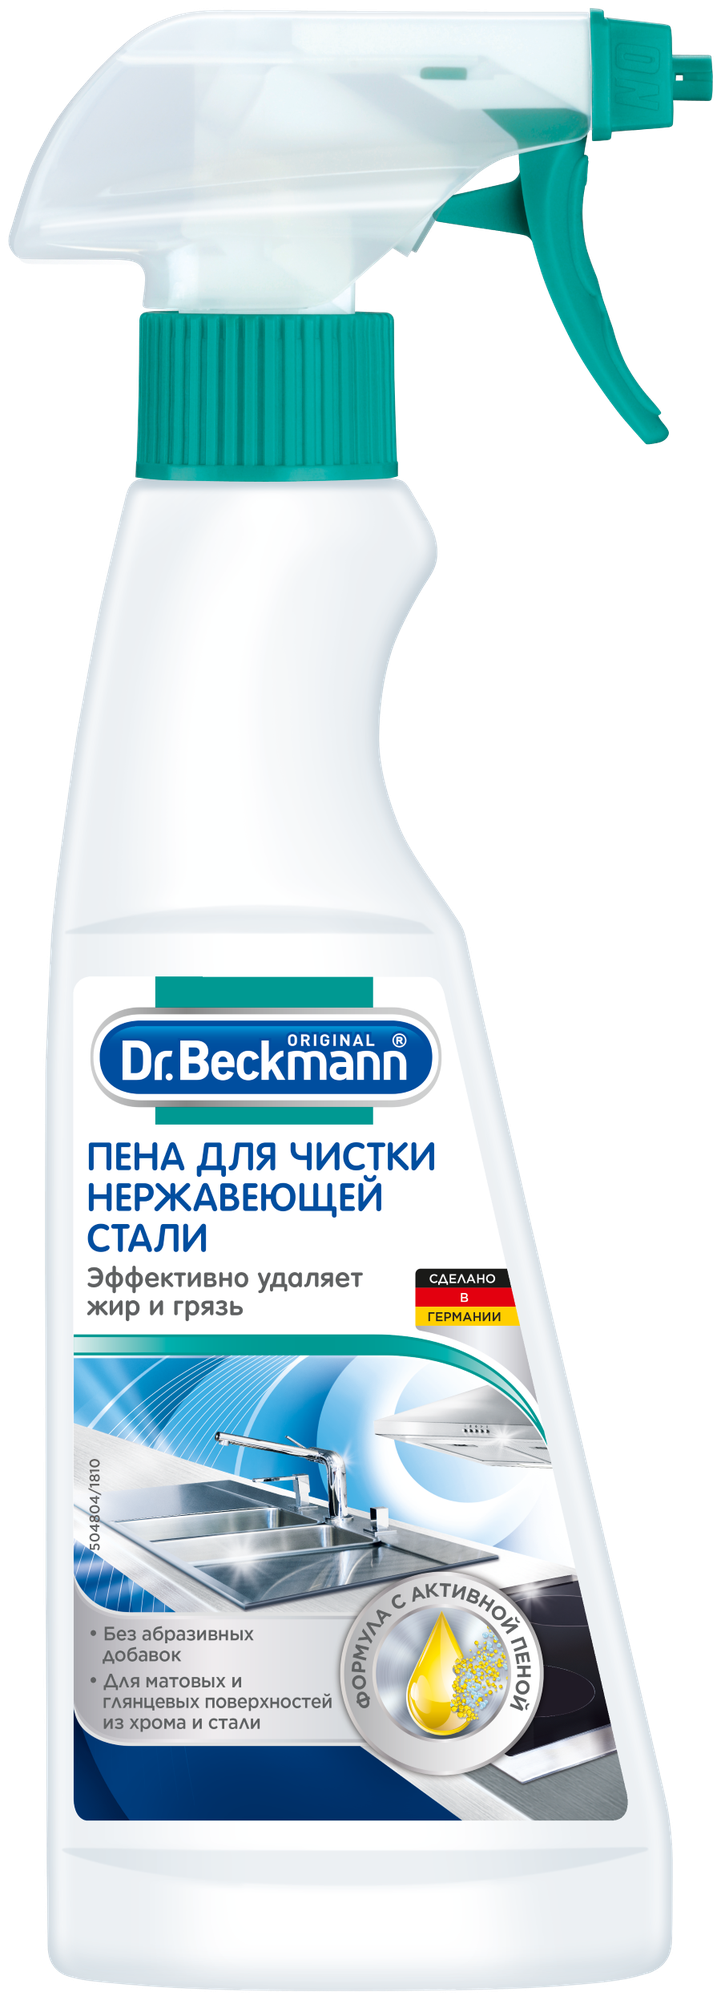 Пена для чистки нержавеющей стали Dr. Beckmann